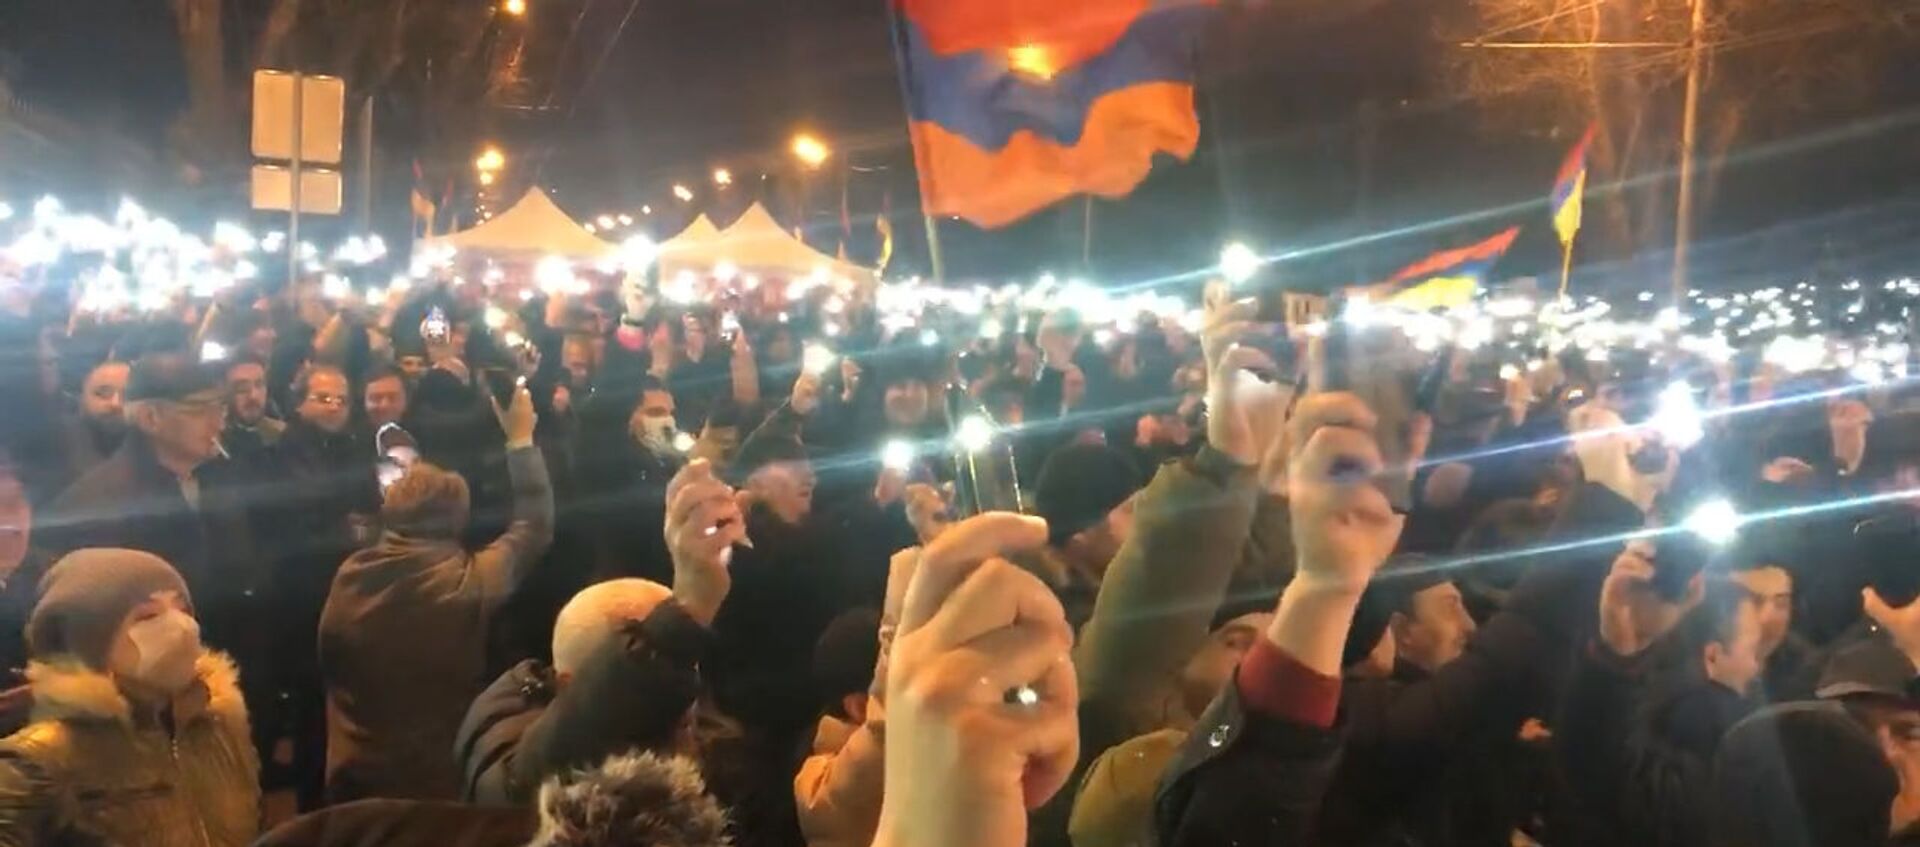 На площади Баграмяна включила фонари на телефонах, чтобы показать масштаб акции протеста. - Sputnik Արմենիա, 1920, 01.03.2021